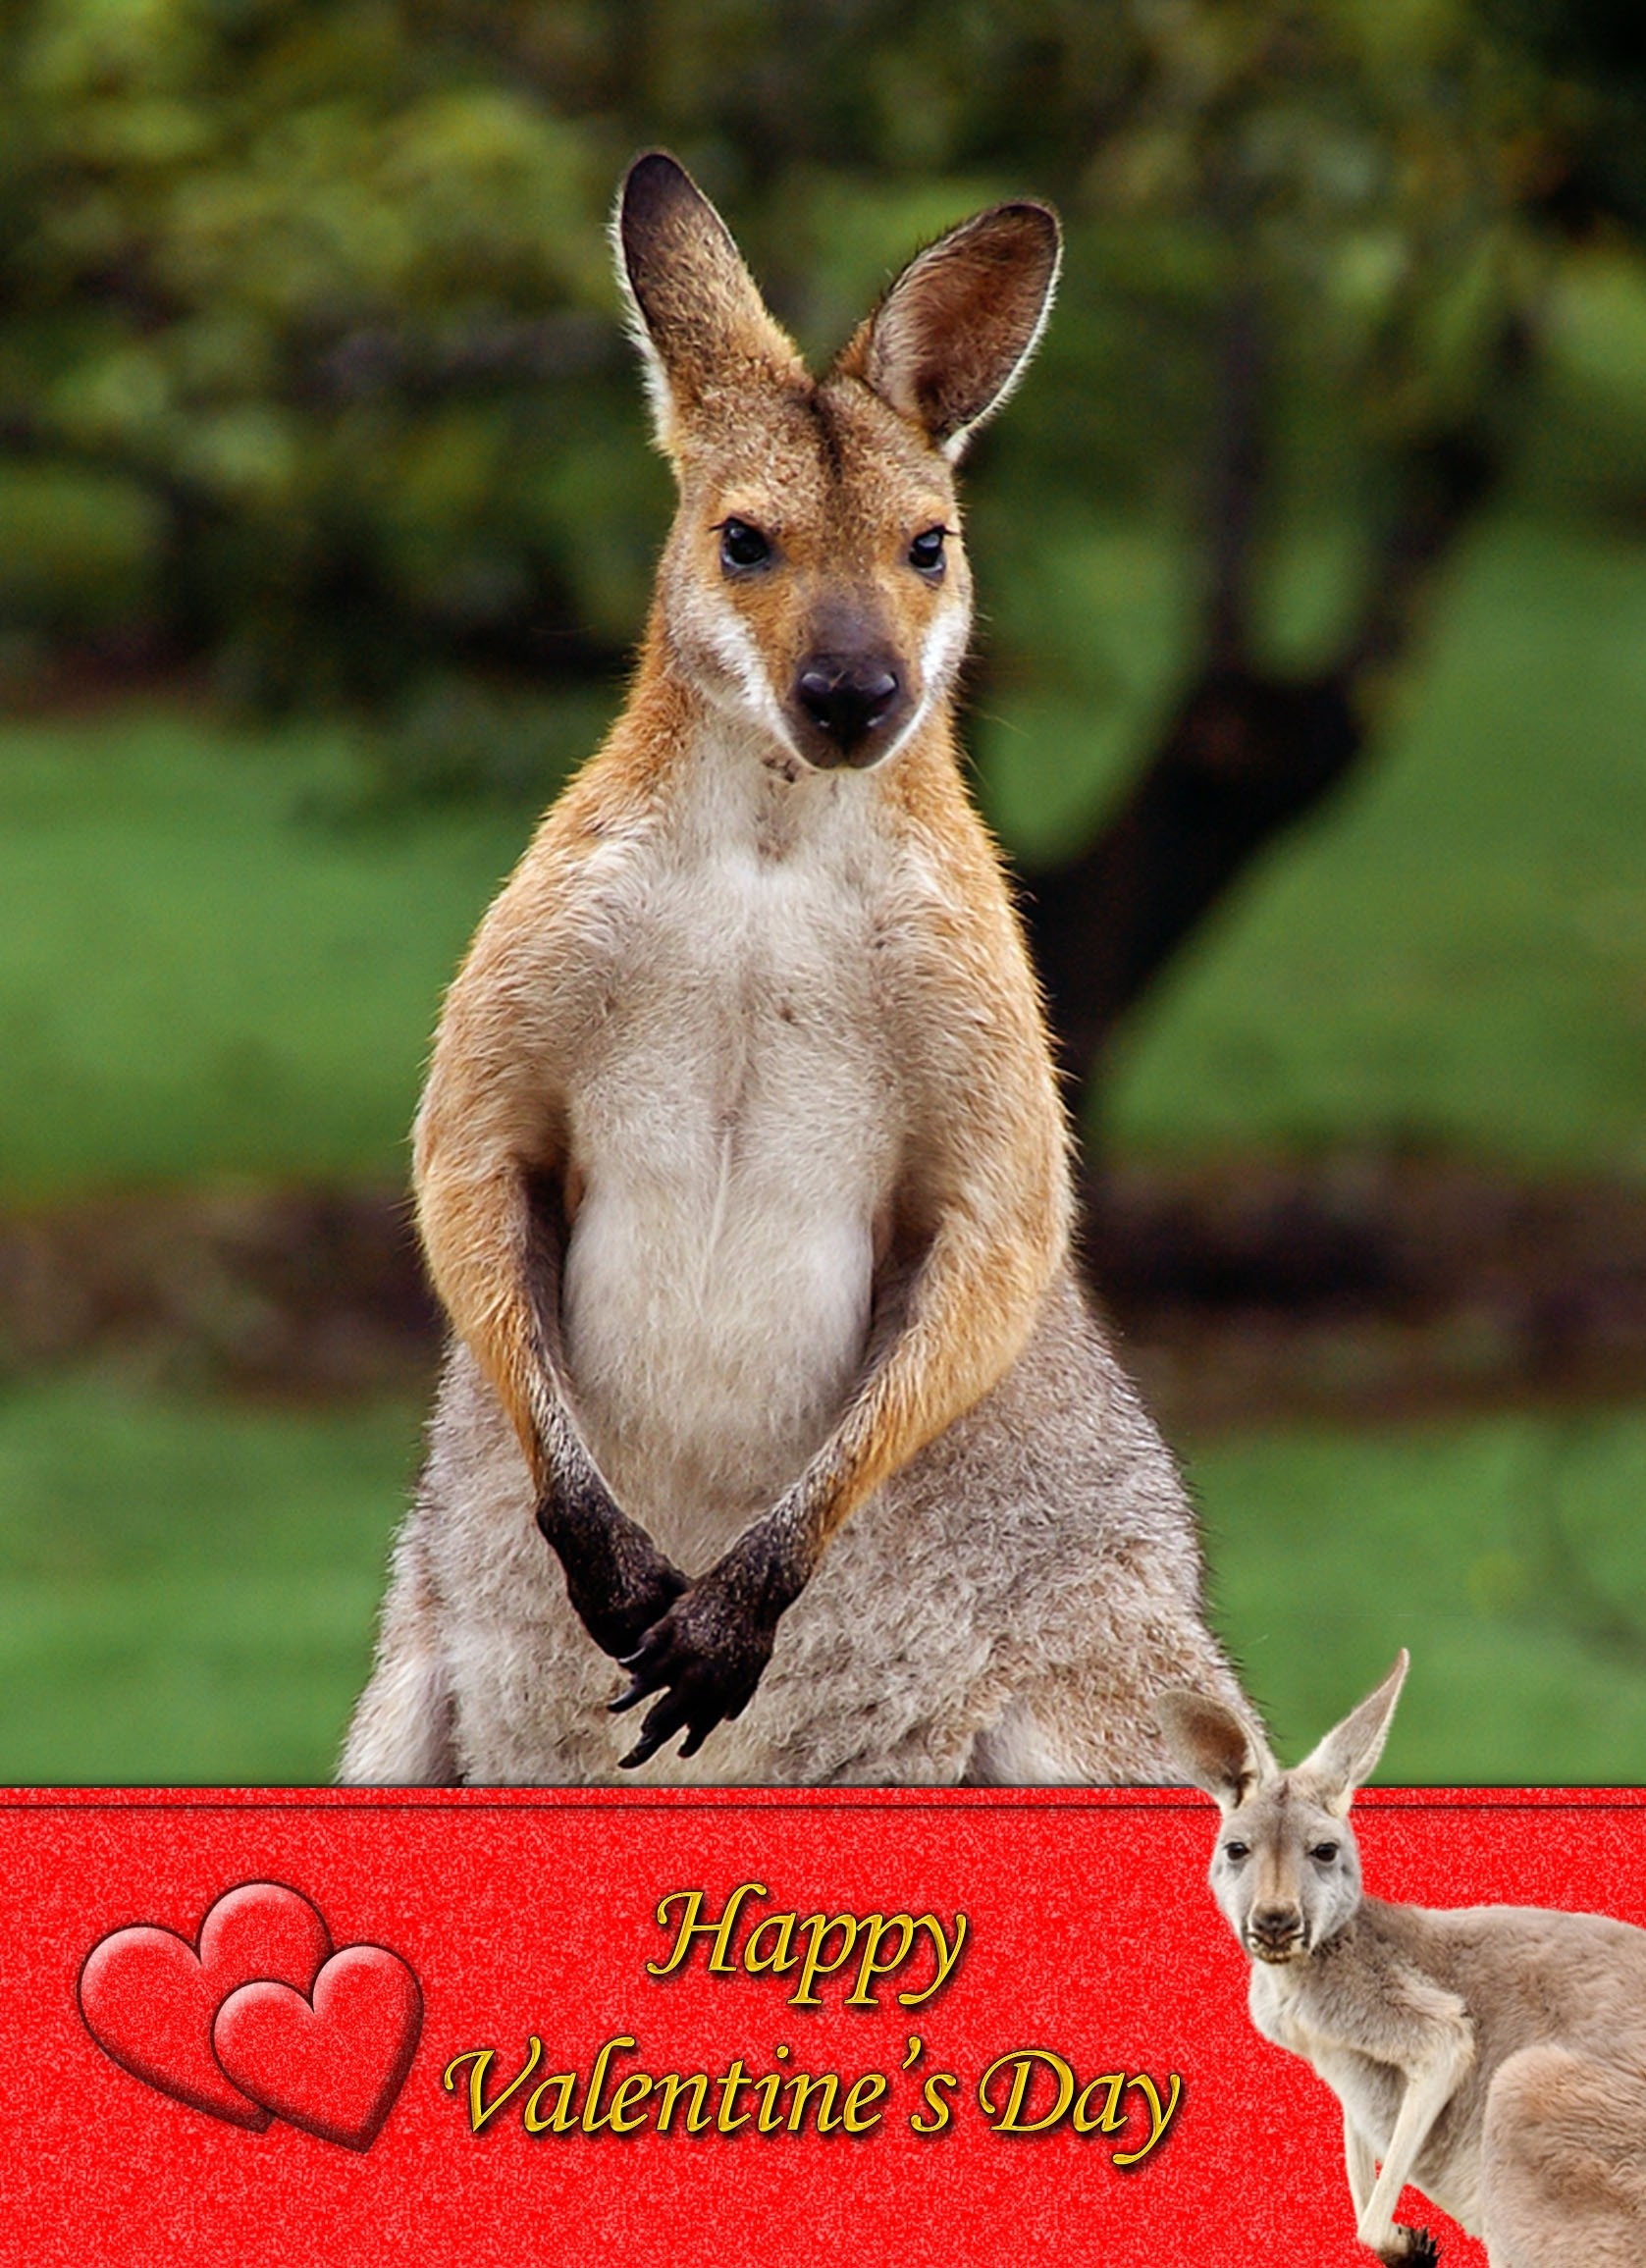 Kangaroo Valentine's Day Card